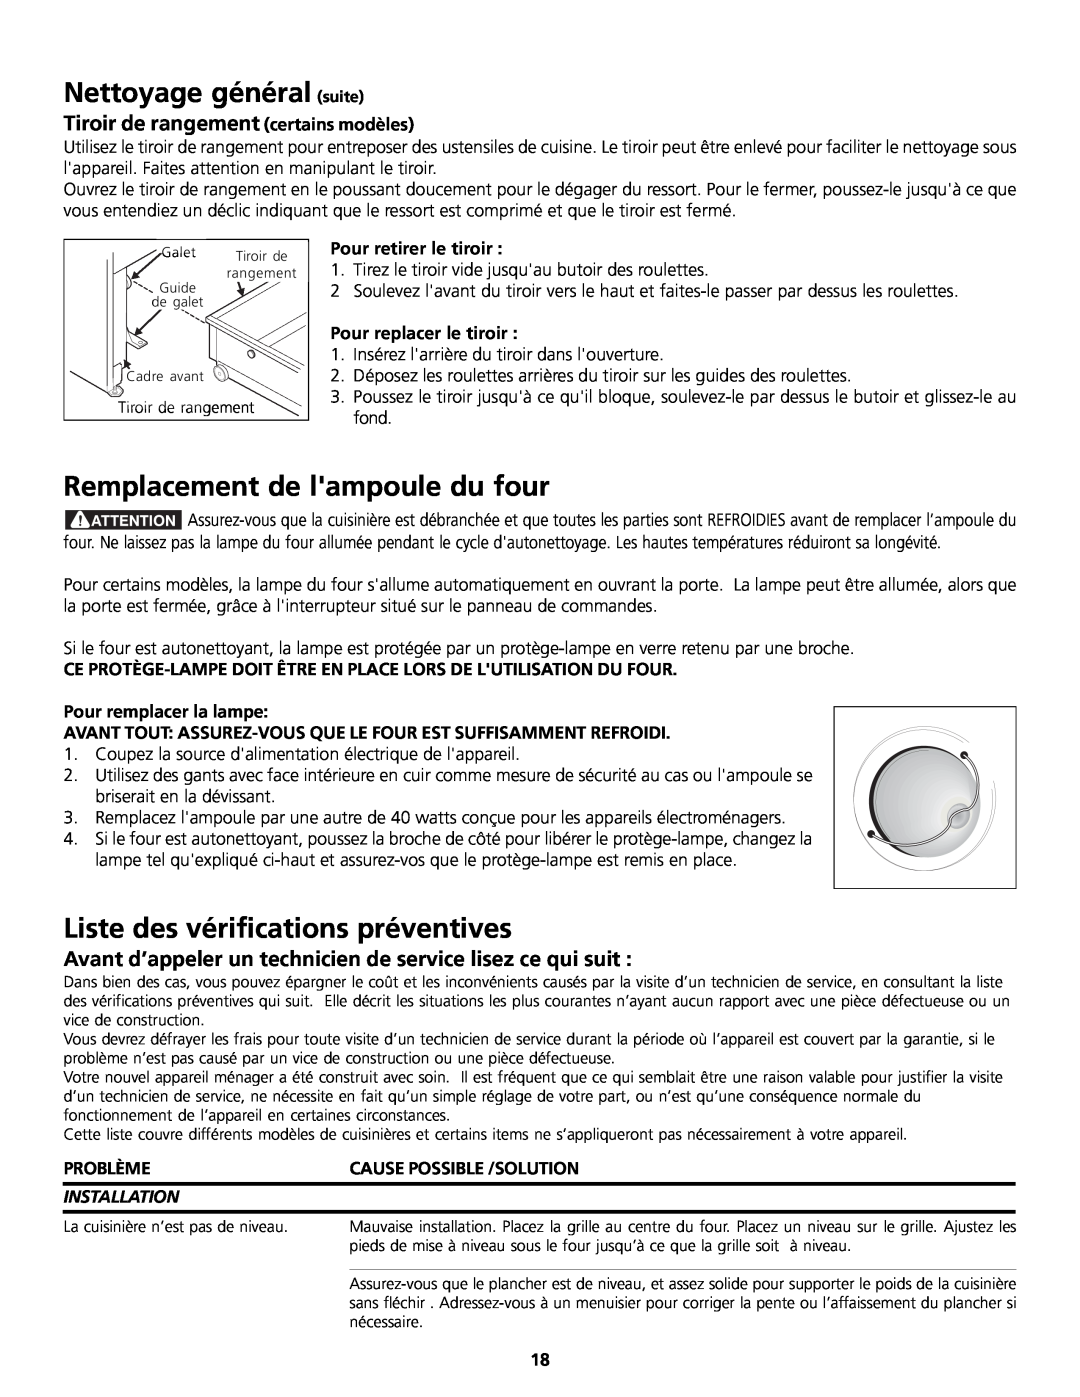 Frigidaire 318200858 Remplacement de lampoule du four, Liste des vérifications préventives, Pour retirer le tiroir 